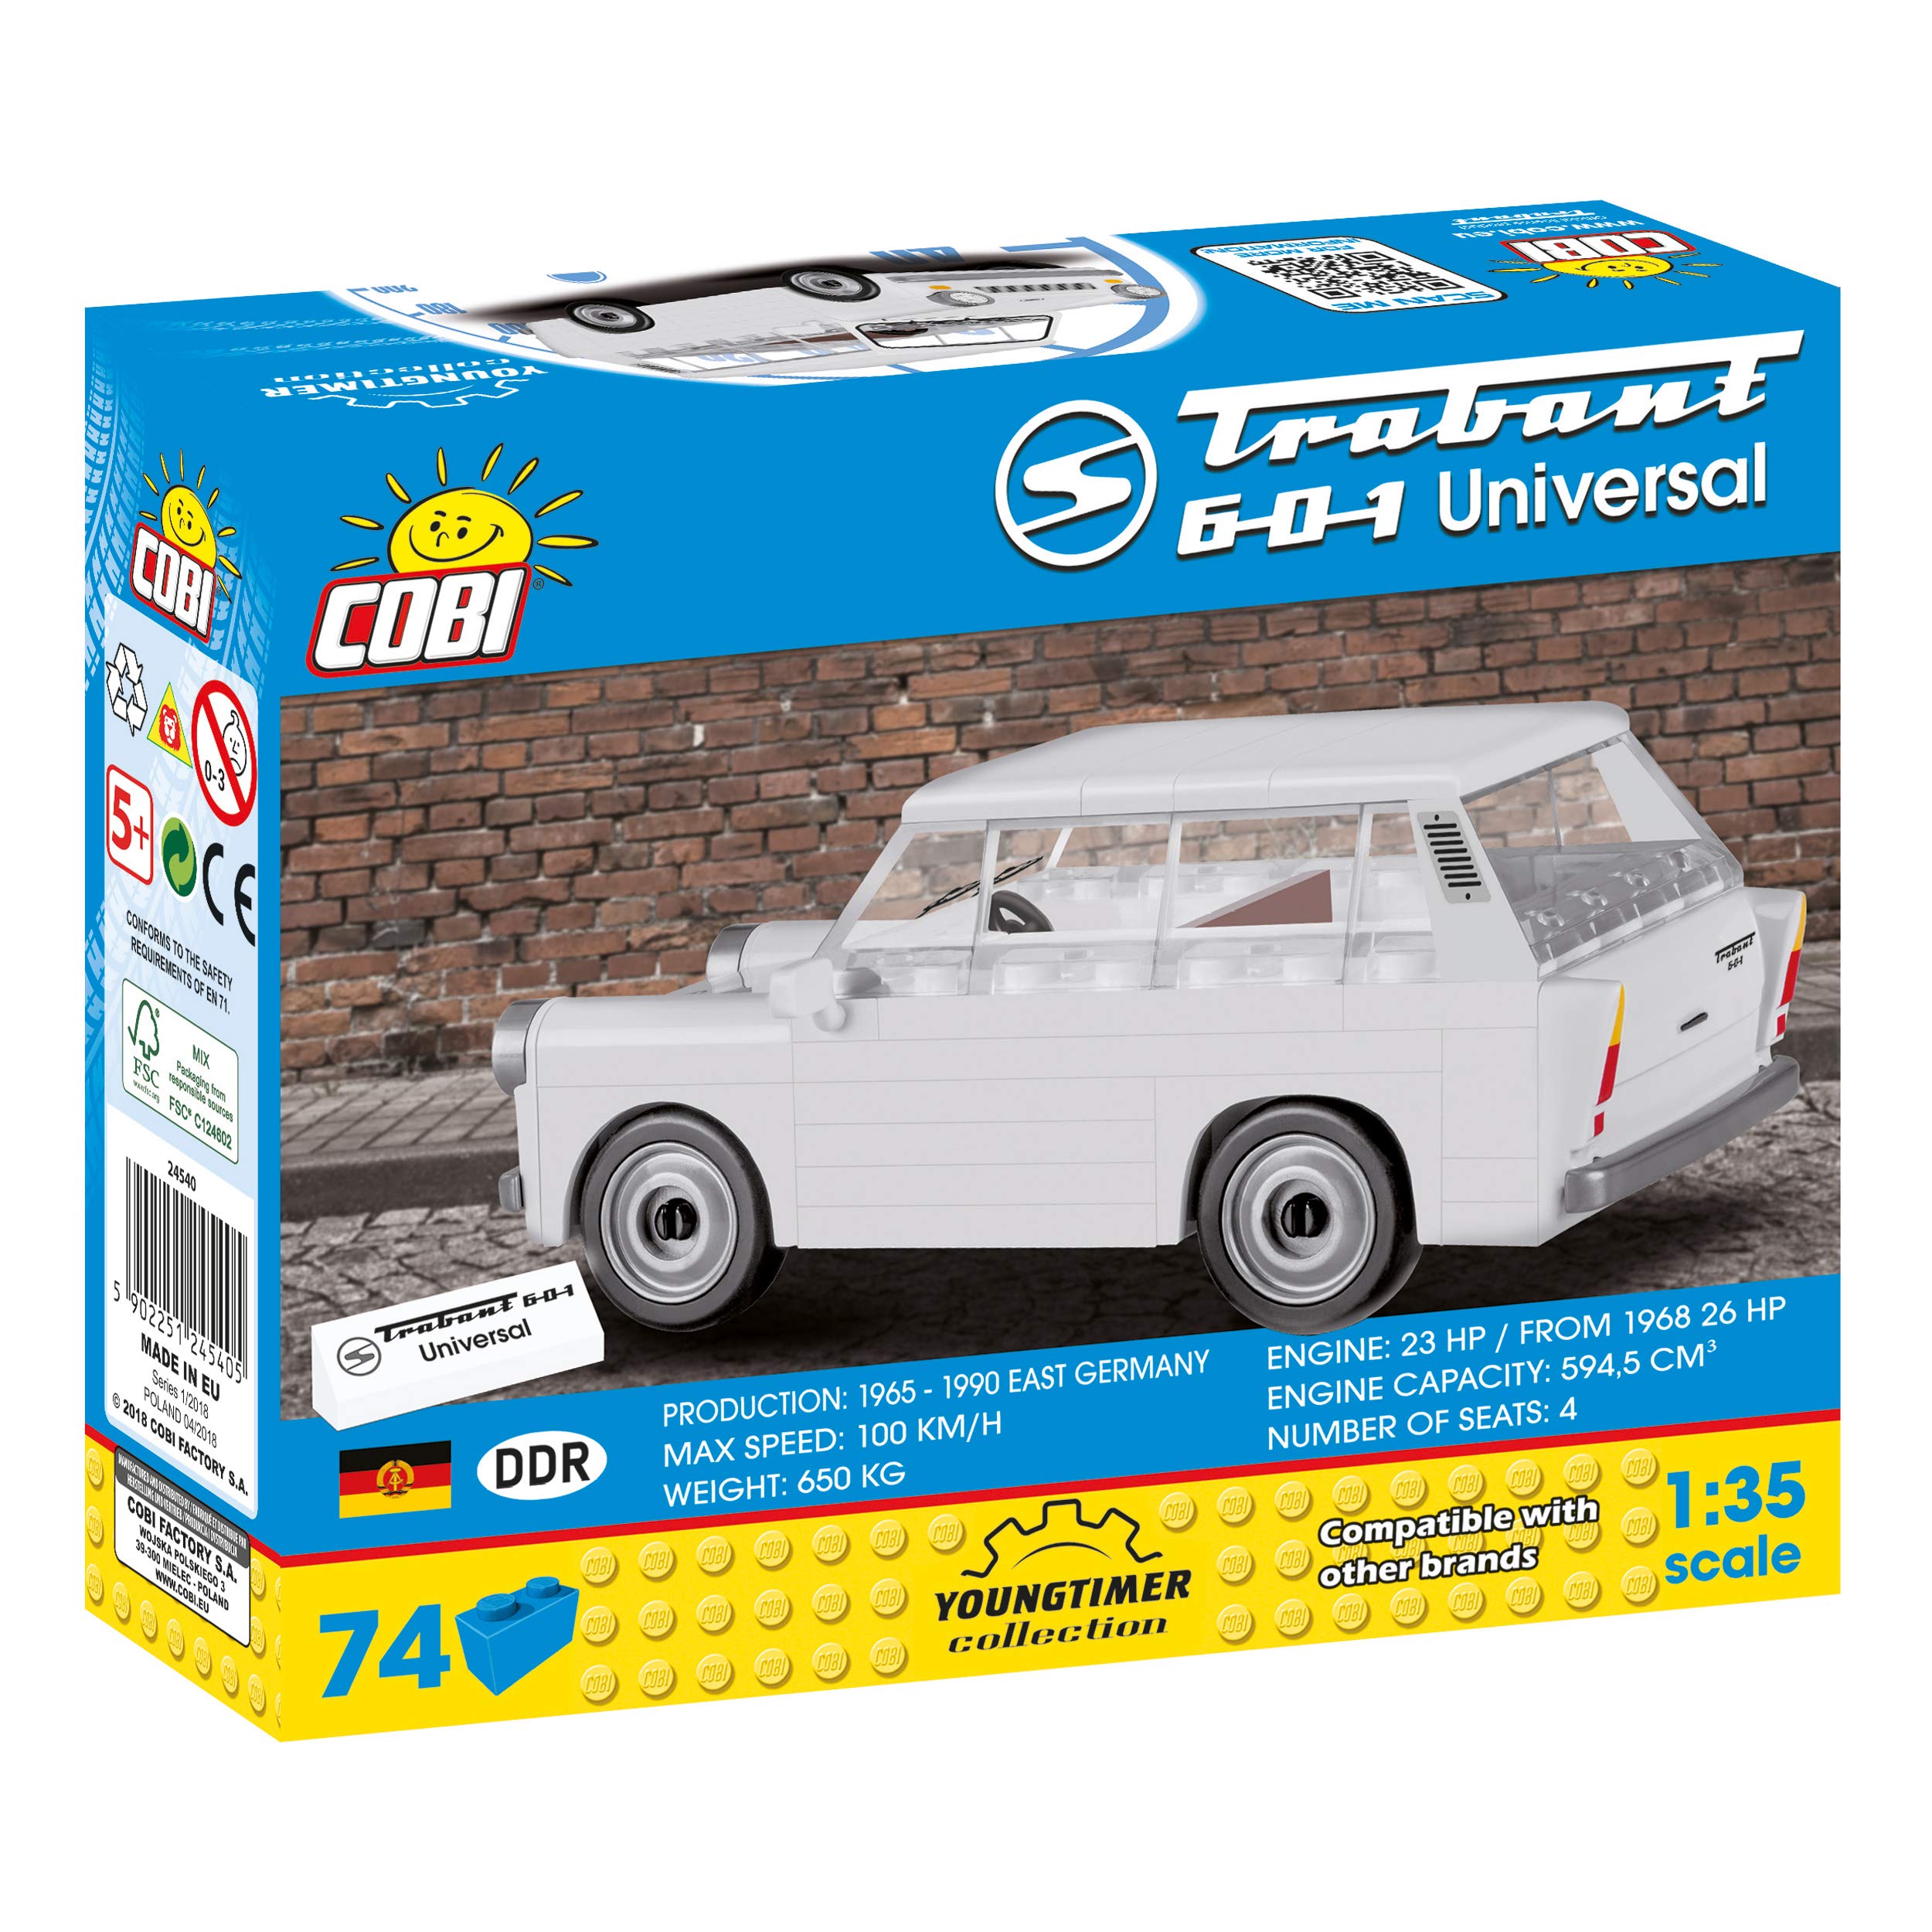 Cobi COB24540 Trabant 601 Universal (74 pcs) Other License Brick Built Model kit